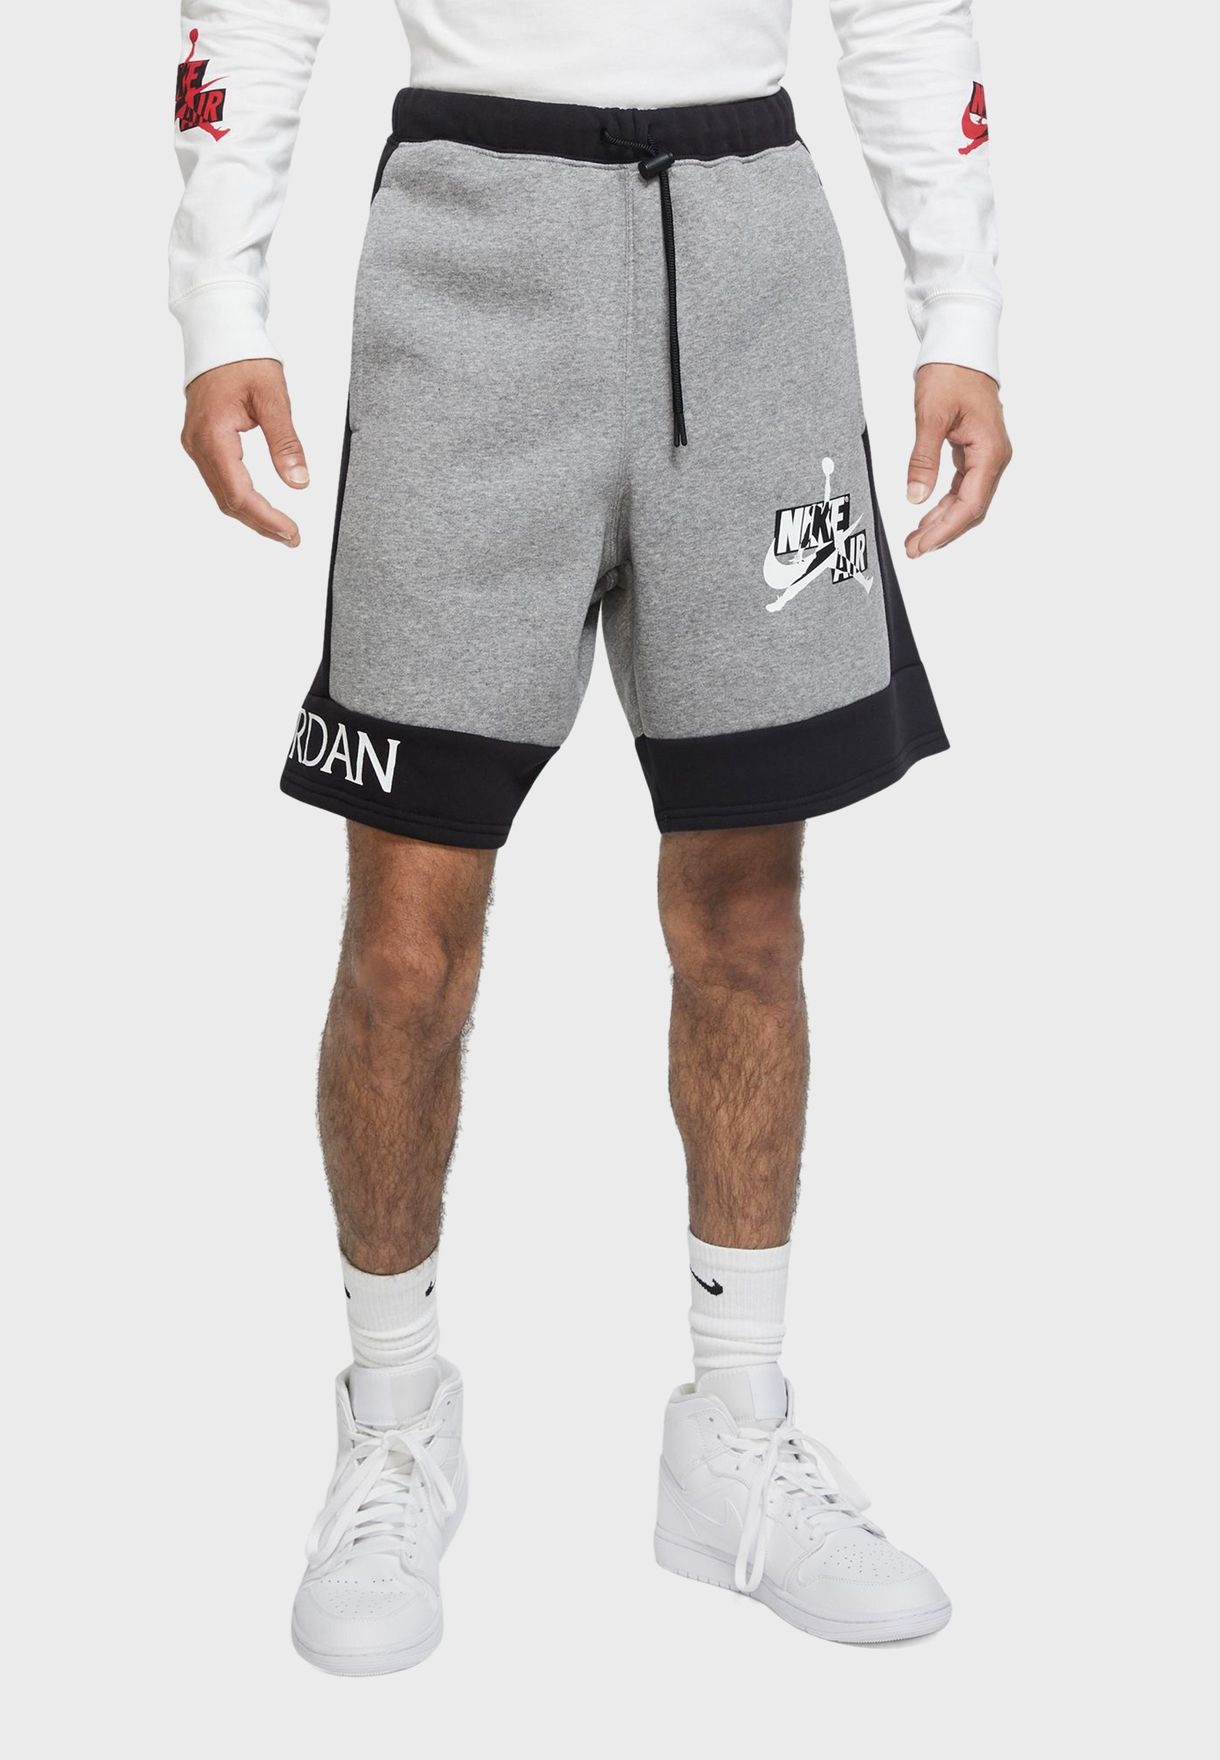 classic jordan shorts